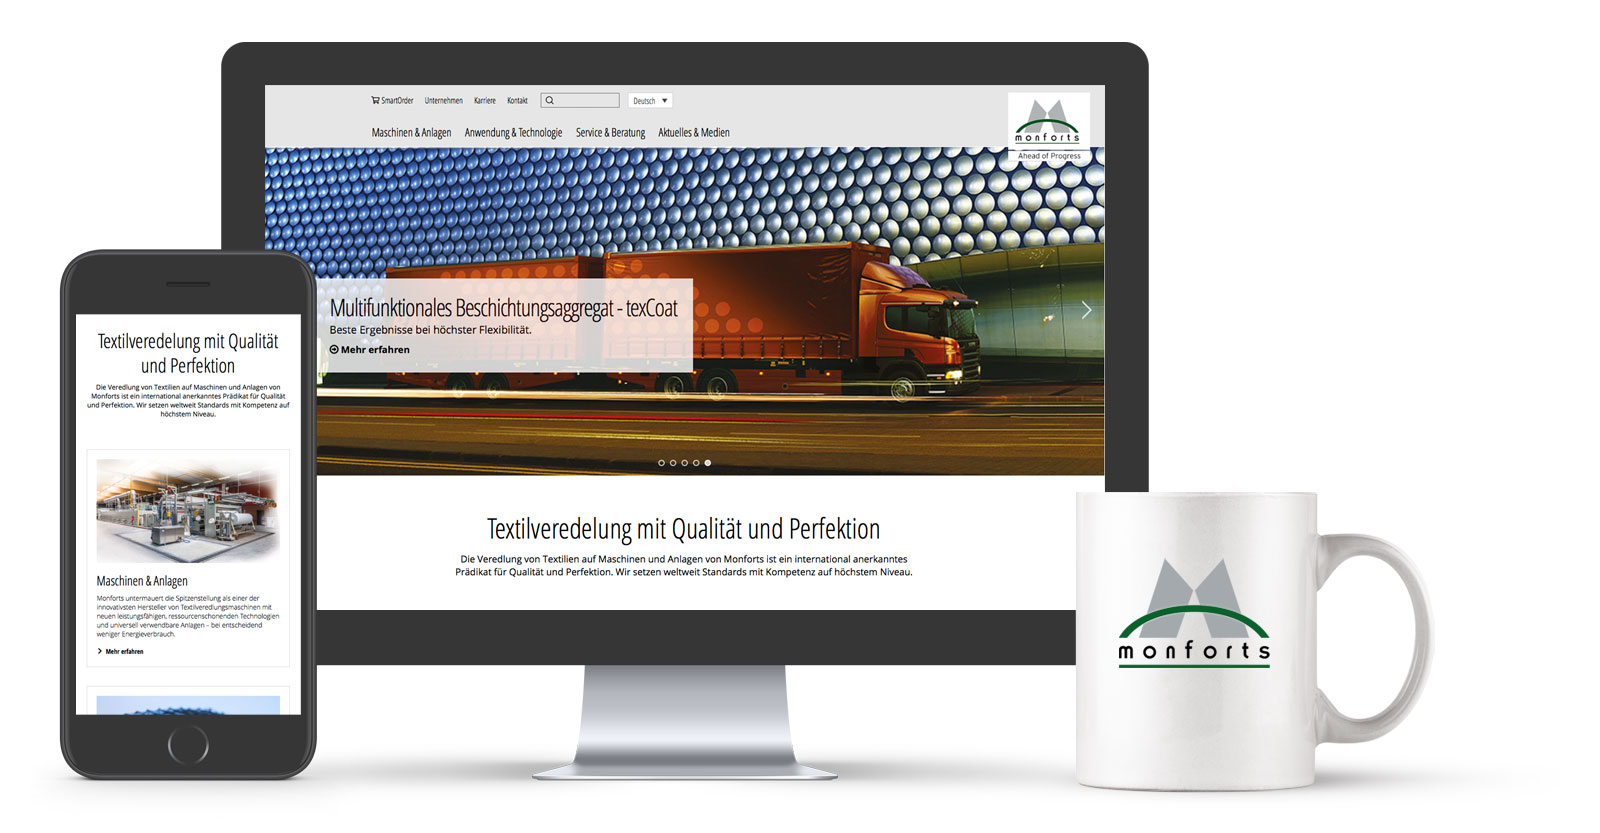 Referenz: Website Relaunch - A. Monforts Textilmaschinen GmbH & Co. KG